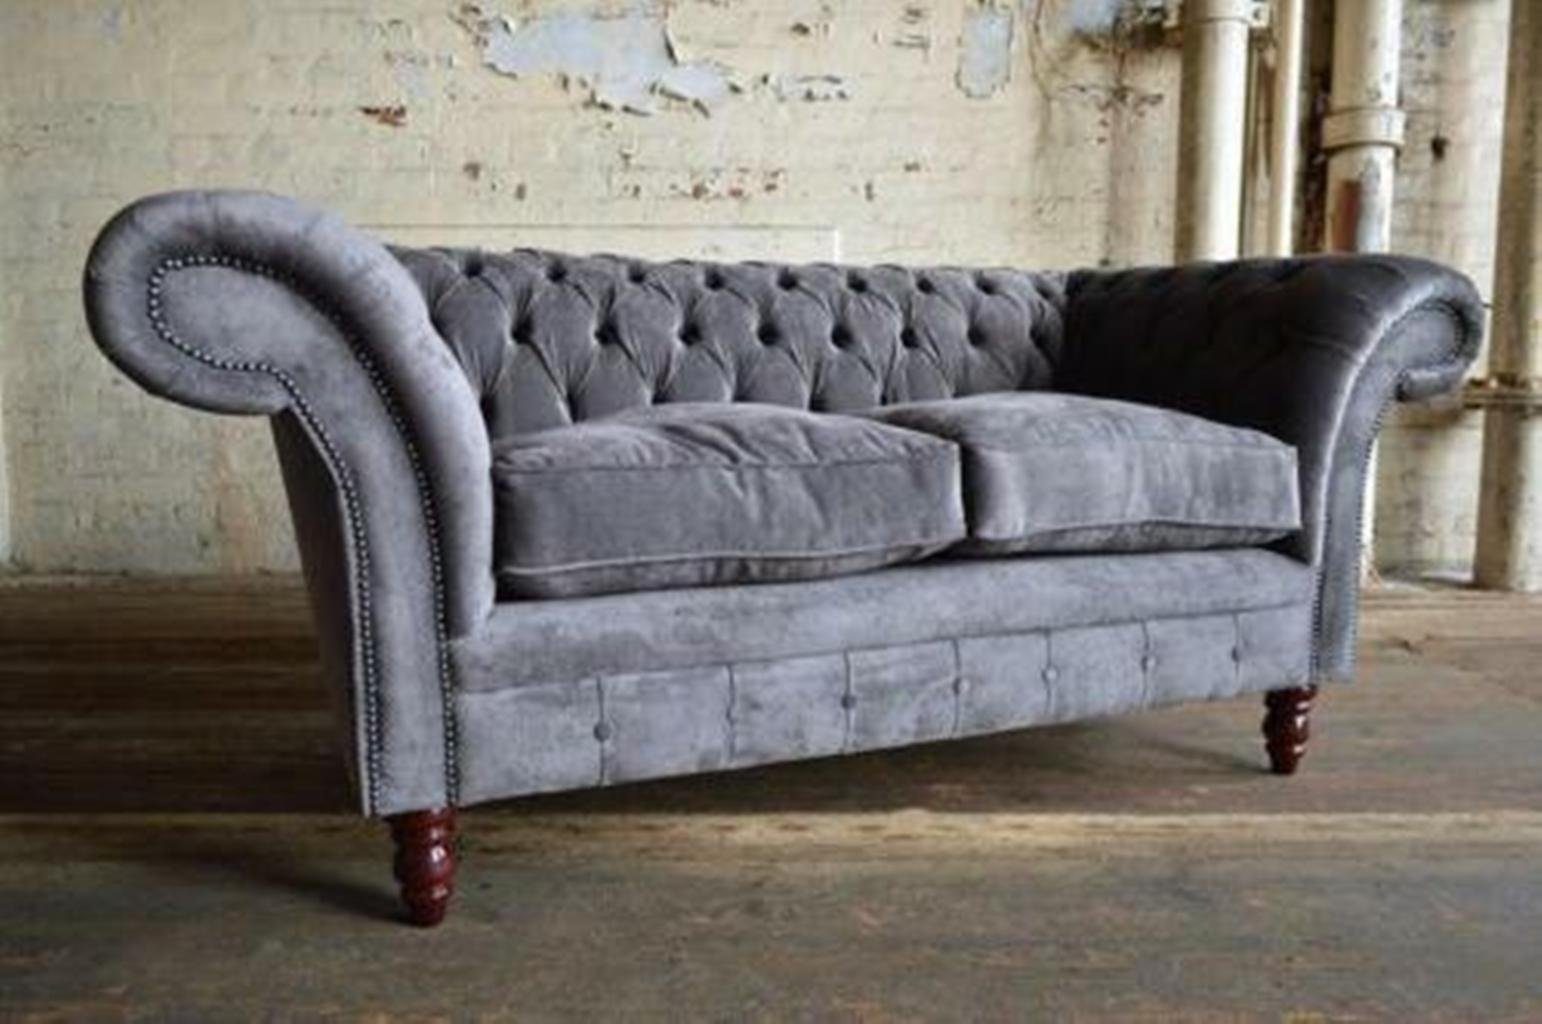 JVmoebel Chesterfield-Sofa Luxus Chesterfield Grauer Dreisitzer Polstermöbel Design Couch Neu, Made in Europe